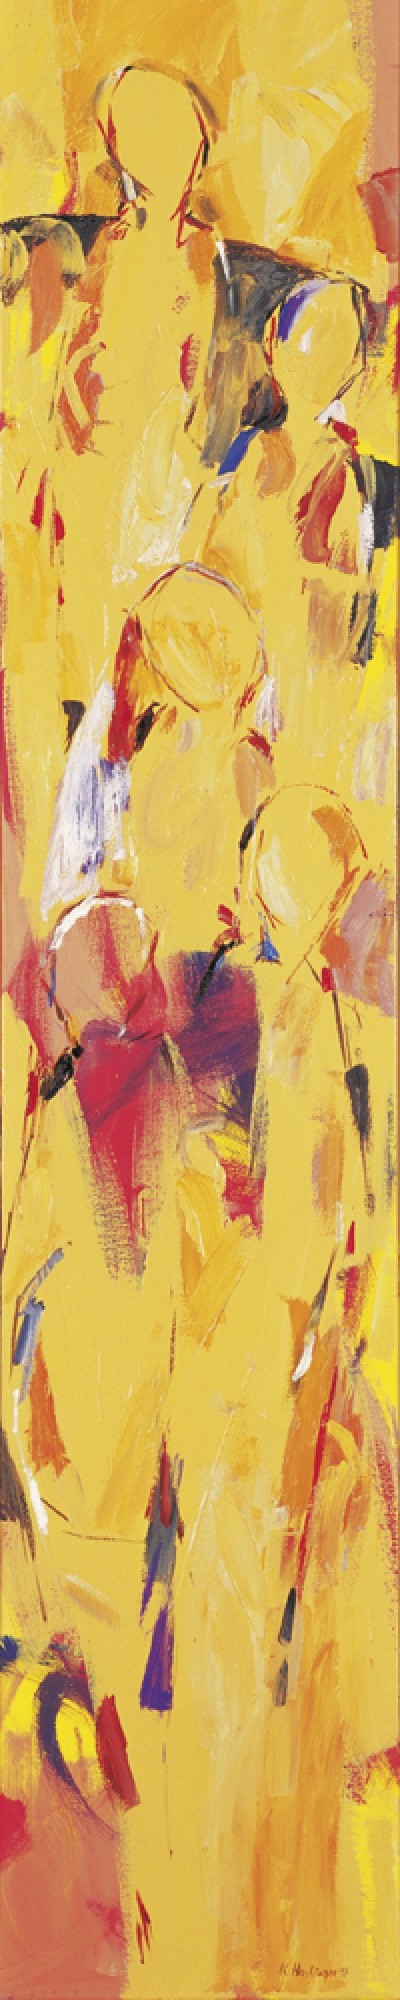 Karin R. Haslinger, Stele Orange, 1997 (Zeitgenössisch, Modern, Abstrakt, Malerei, figurativ, Menschen, Personen, Wohnzimmer, Treppenhaus, gelb)